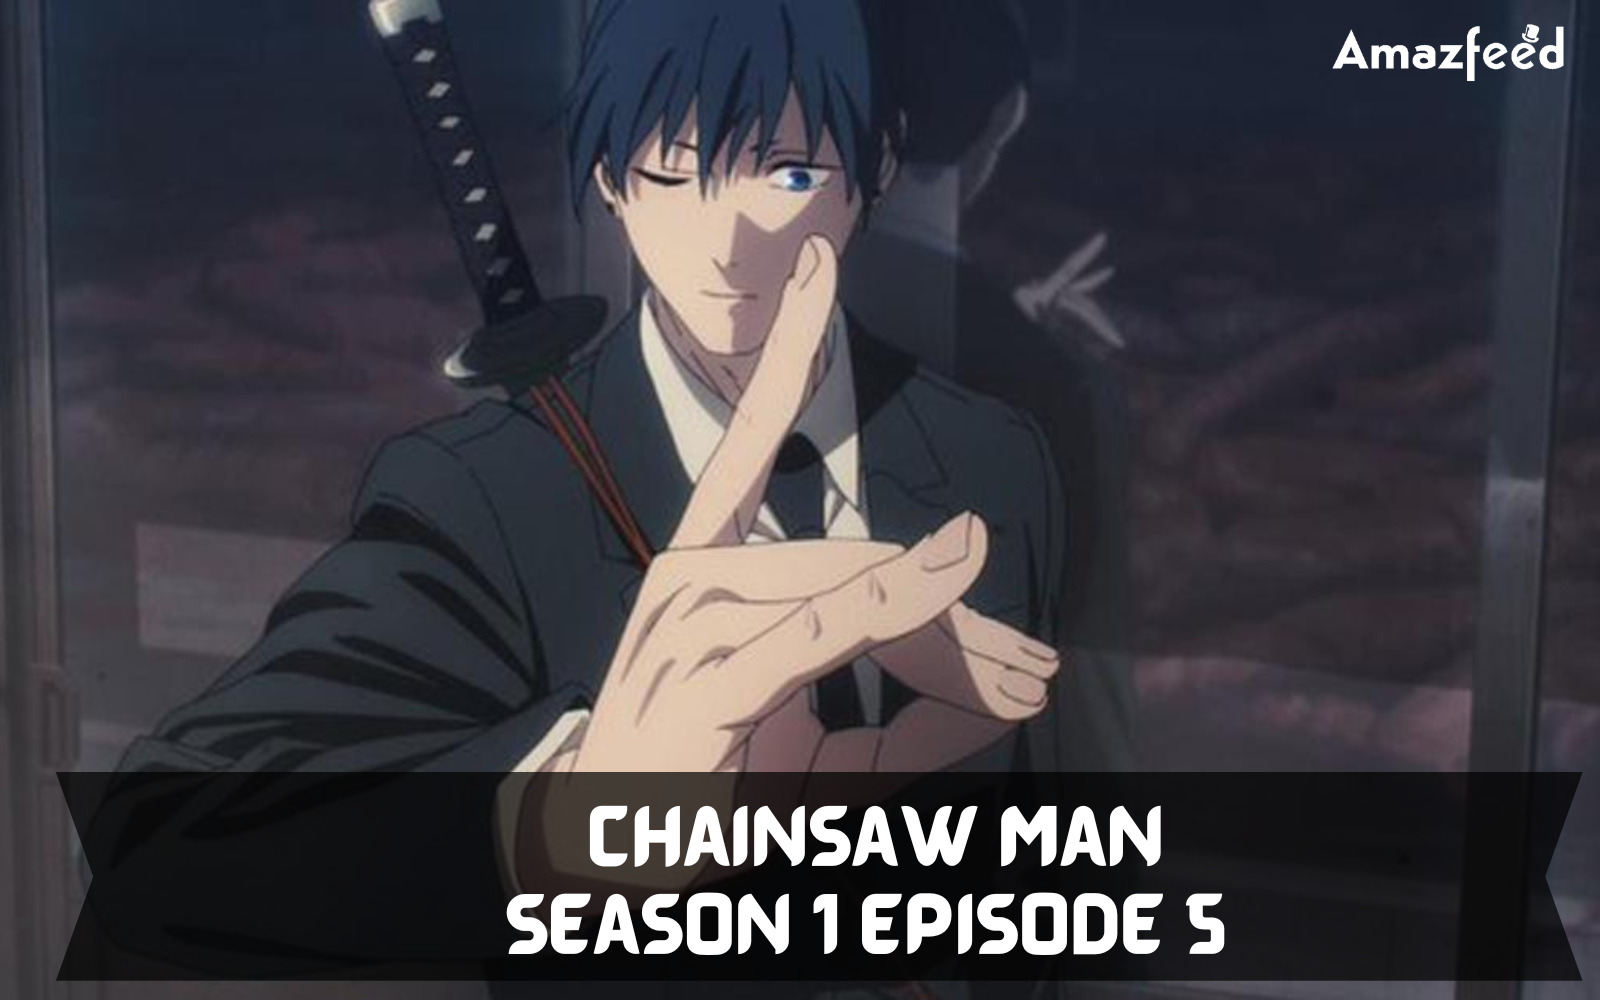 Chainsaw Man Season 1 Episode 5 2Chainsaw Man Season 1 Episode 5 2